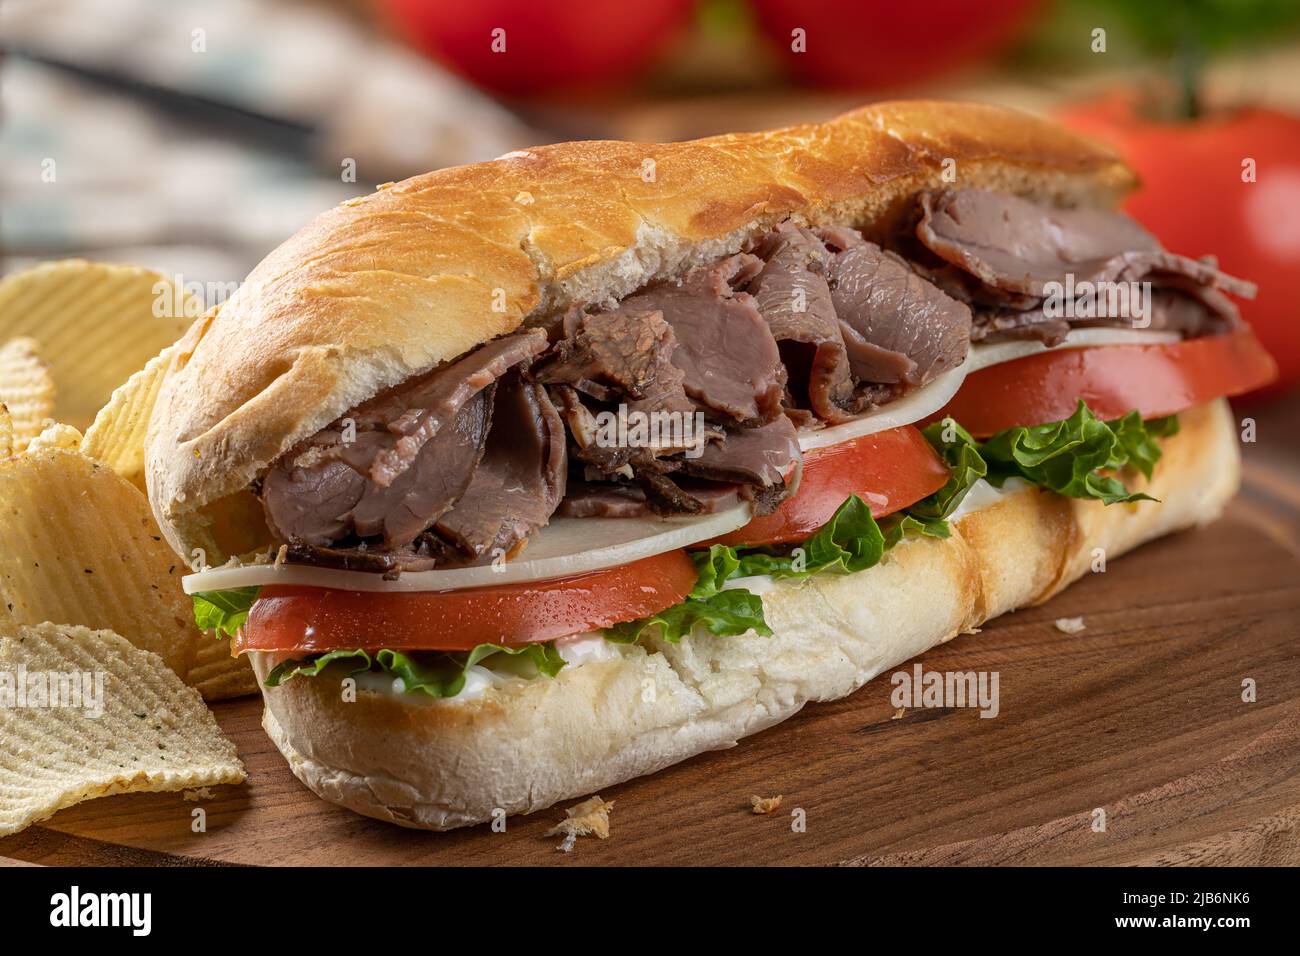 Cierre de un sándwich submarino con carne asada, queso, tomate y lechuga en un rollo de hoagie con patatas fritas en una tabla de cortar Foto de stock